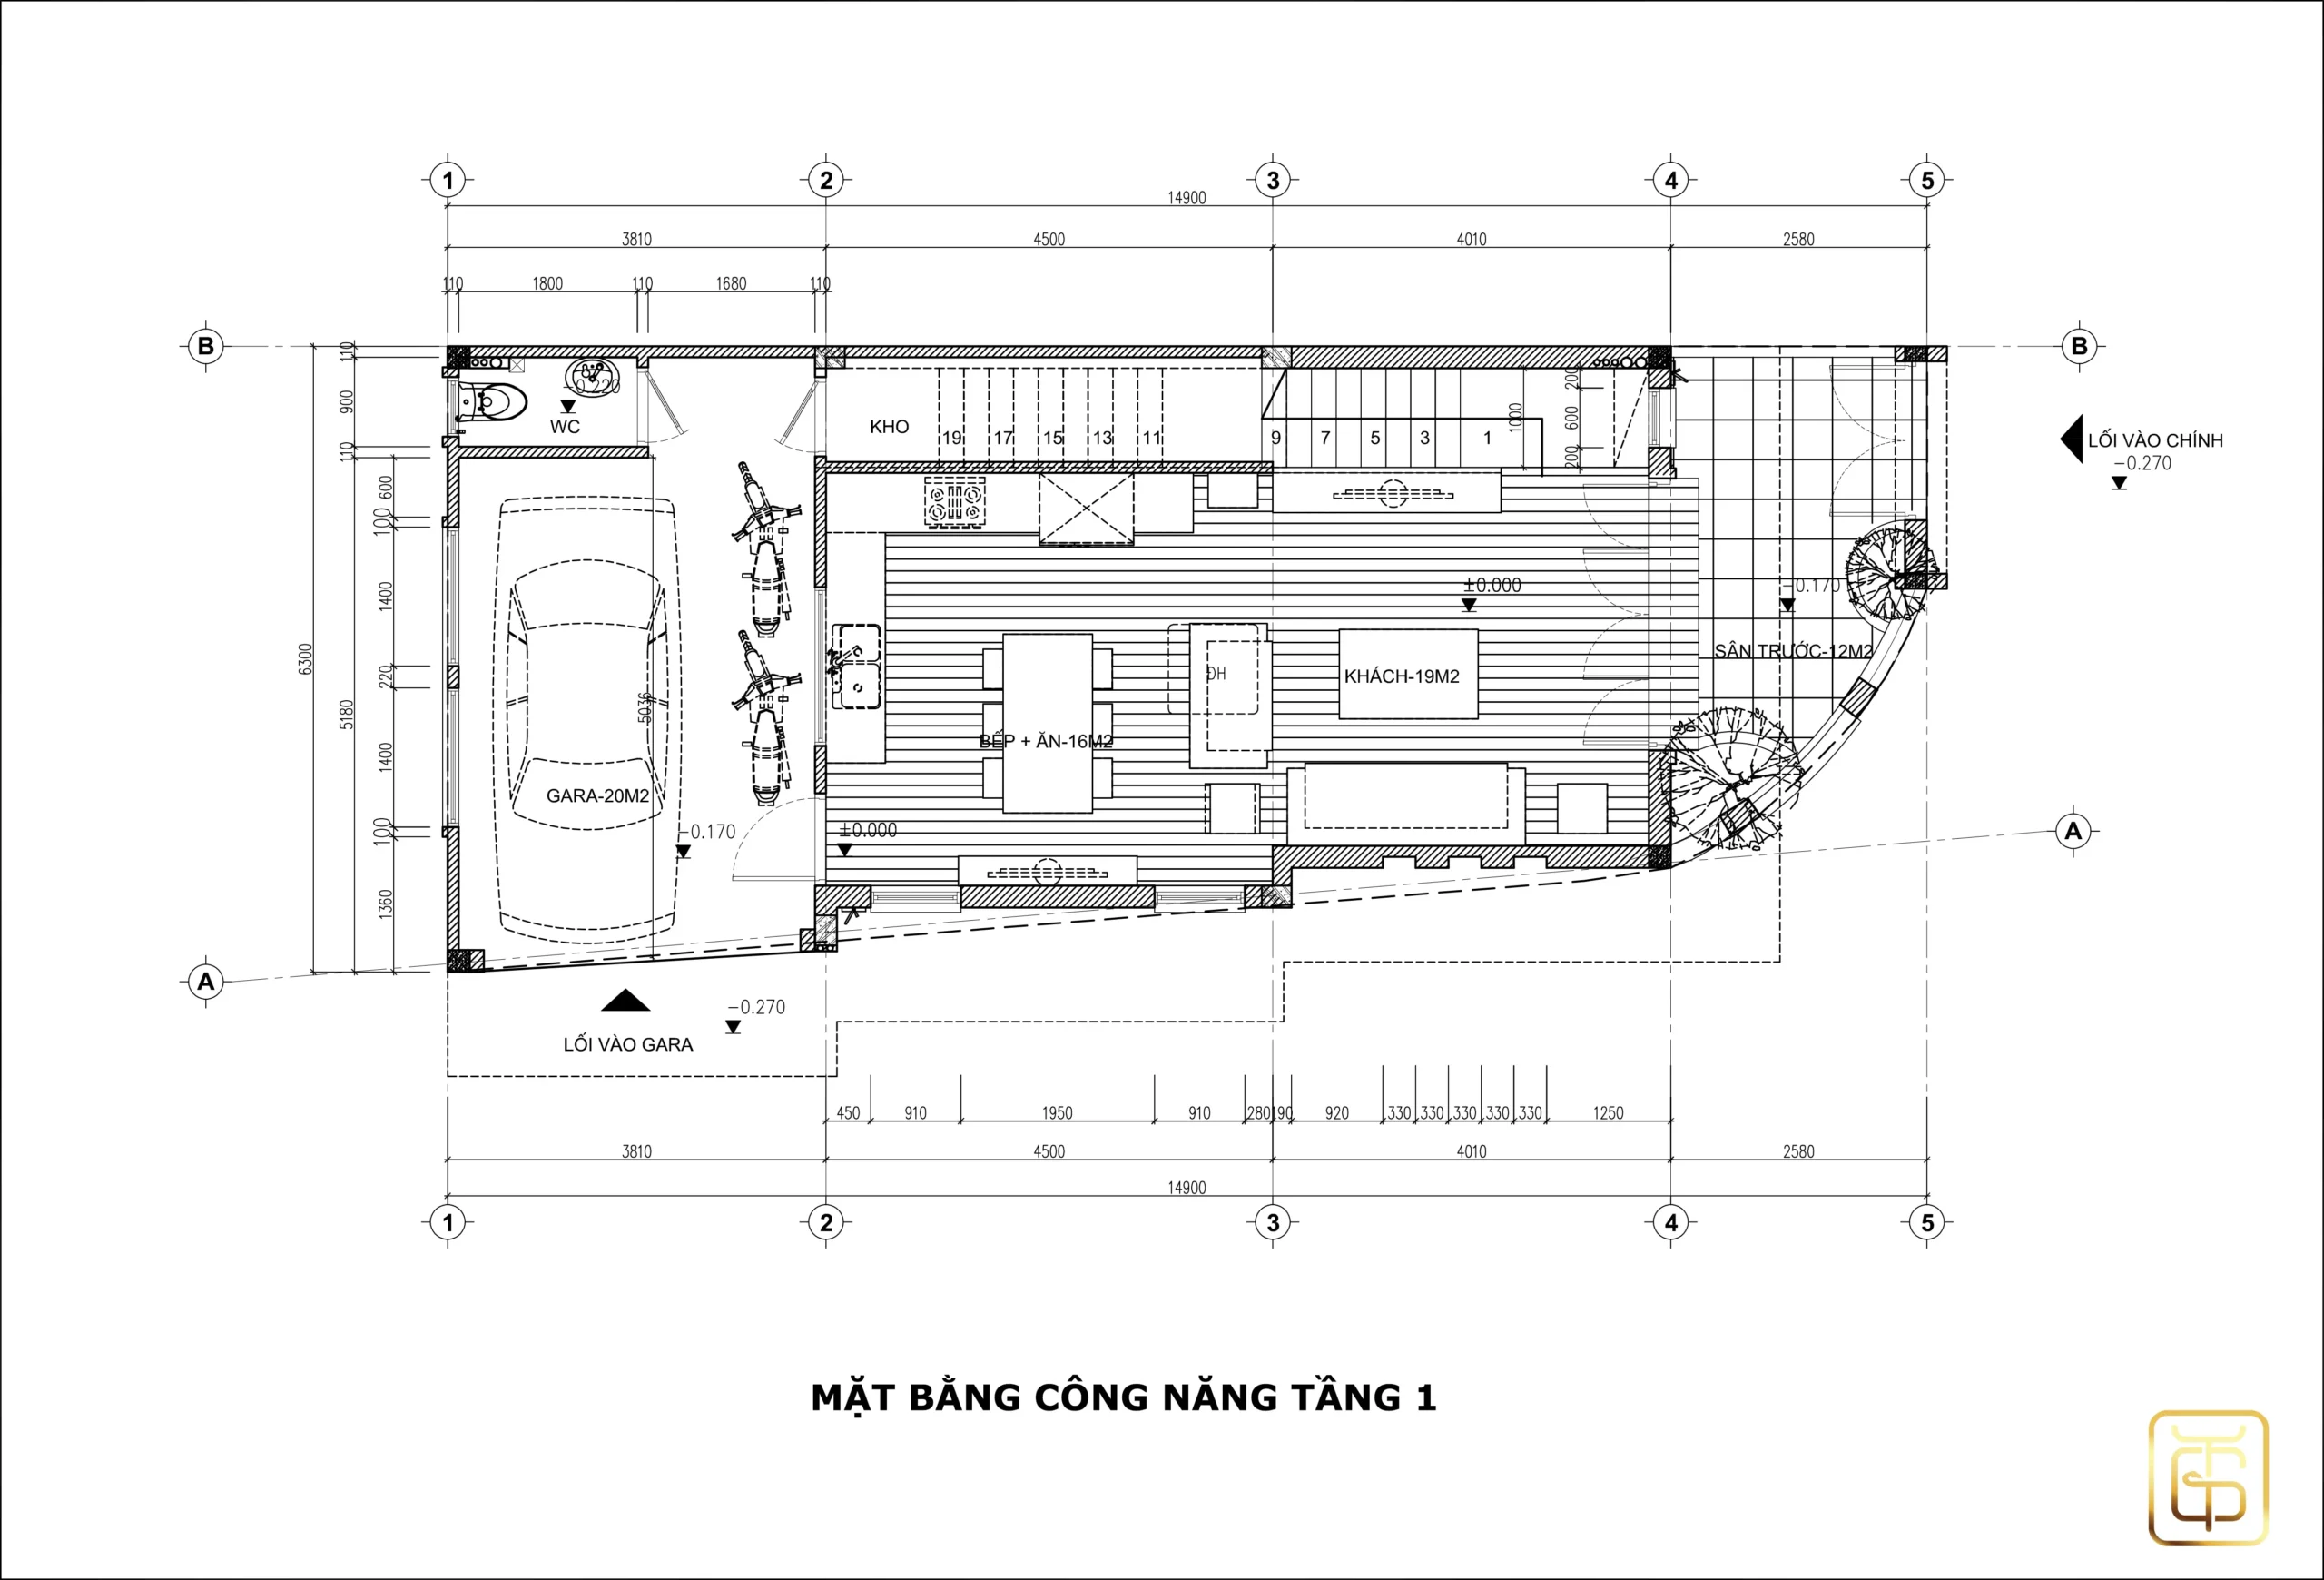 Mặt bằng kiến trúc tầng 1 là không gian sinh hoạt chung: phòng khách, phòng bếp, nhà kho và gara ô tô 